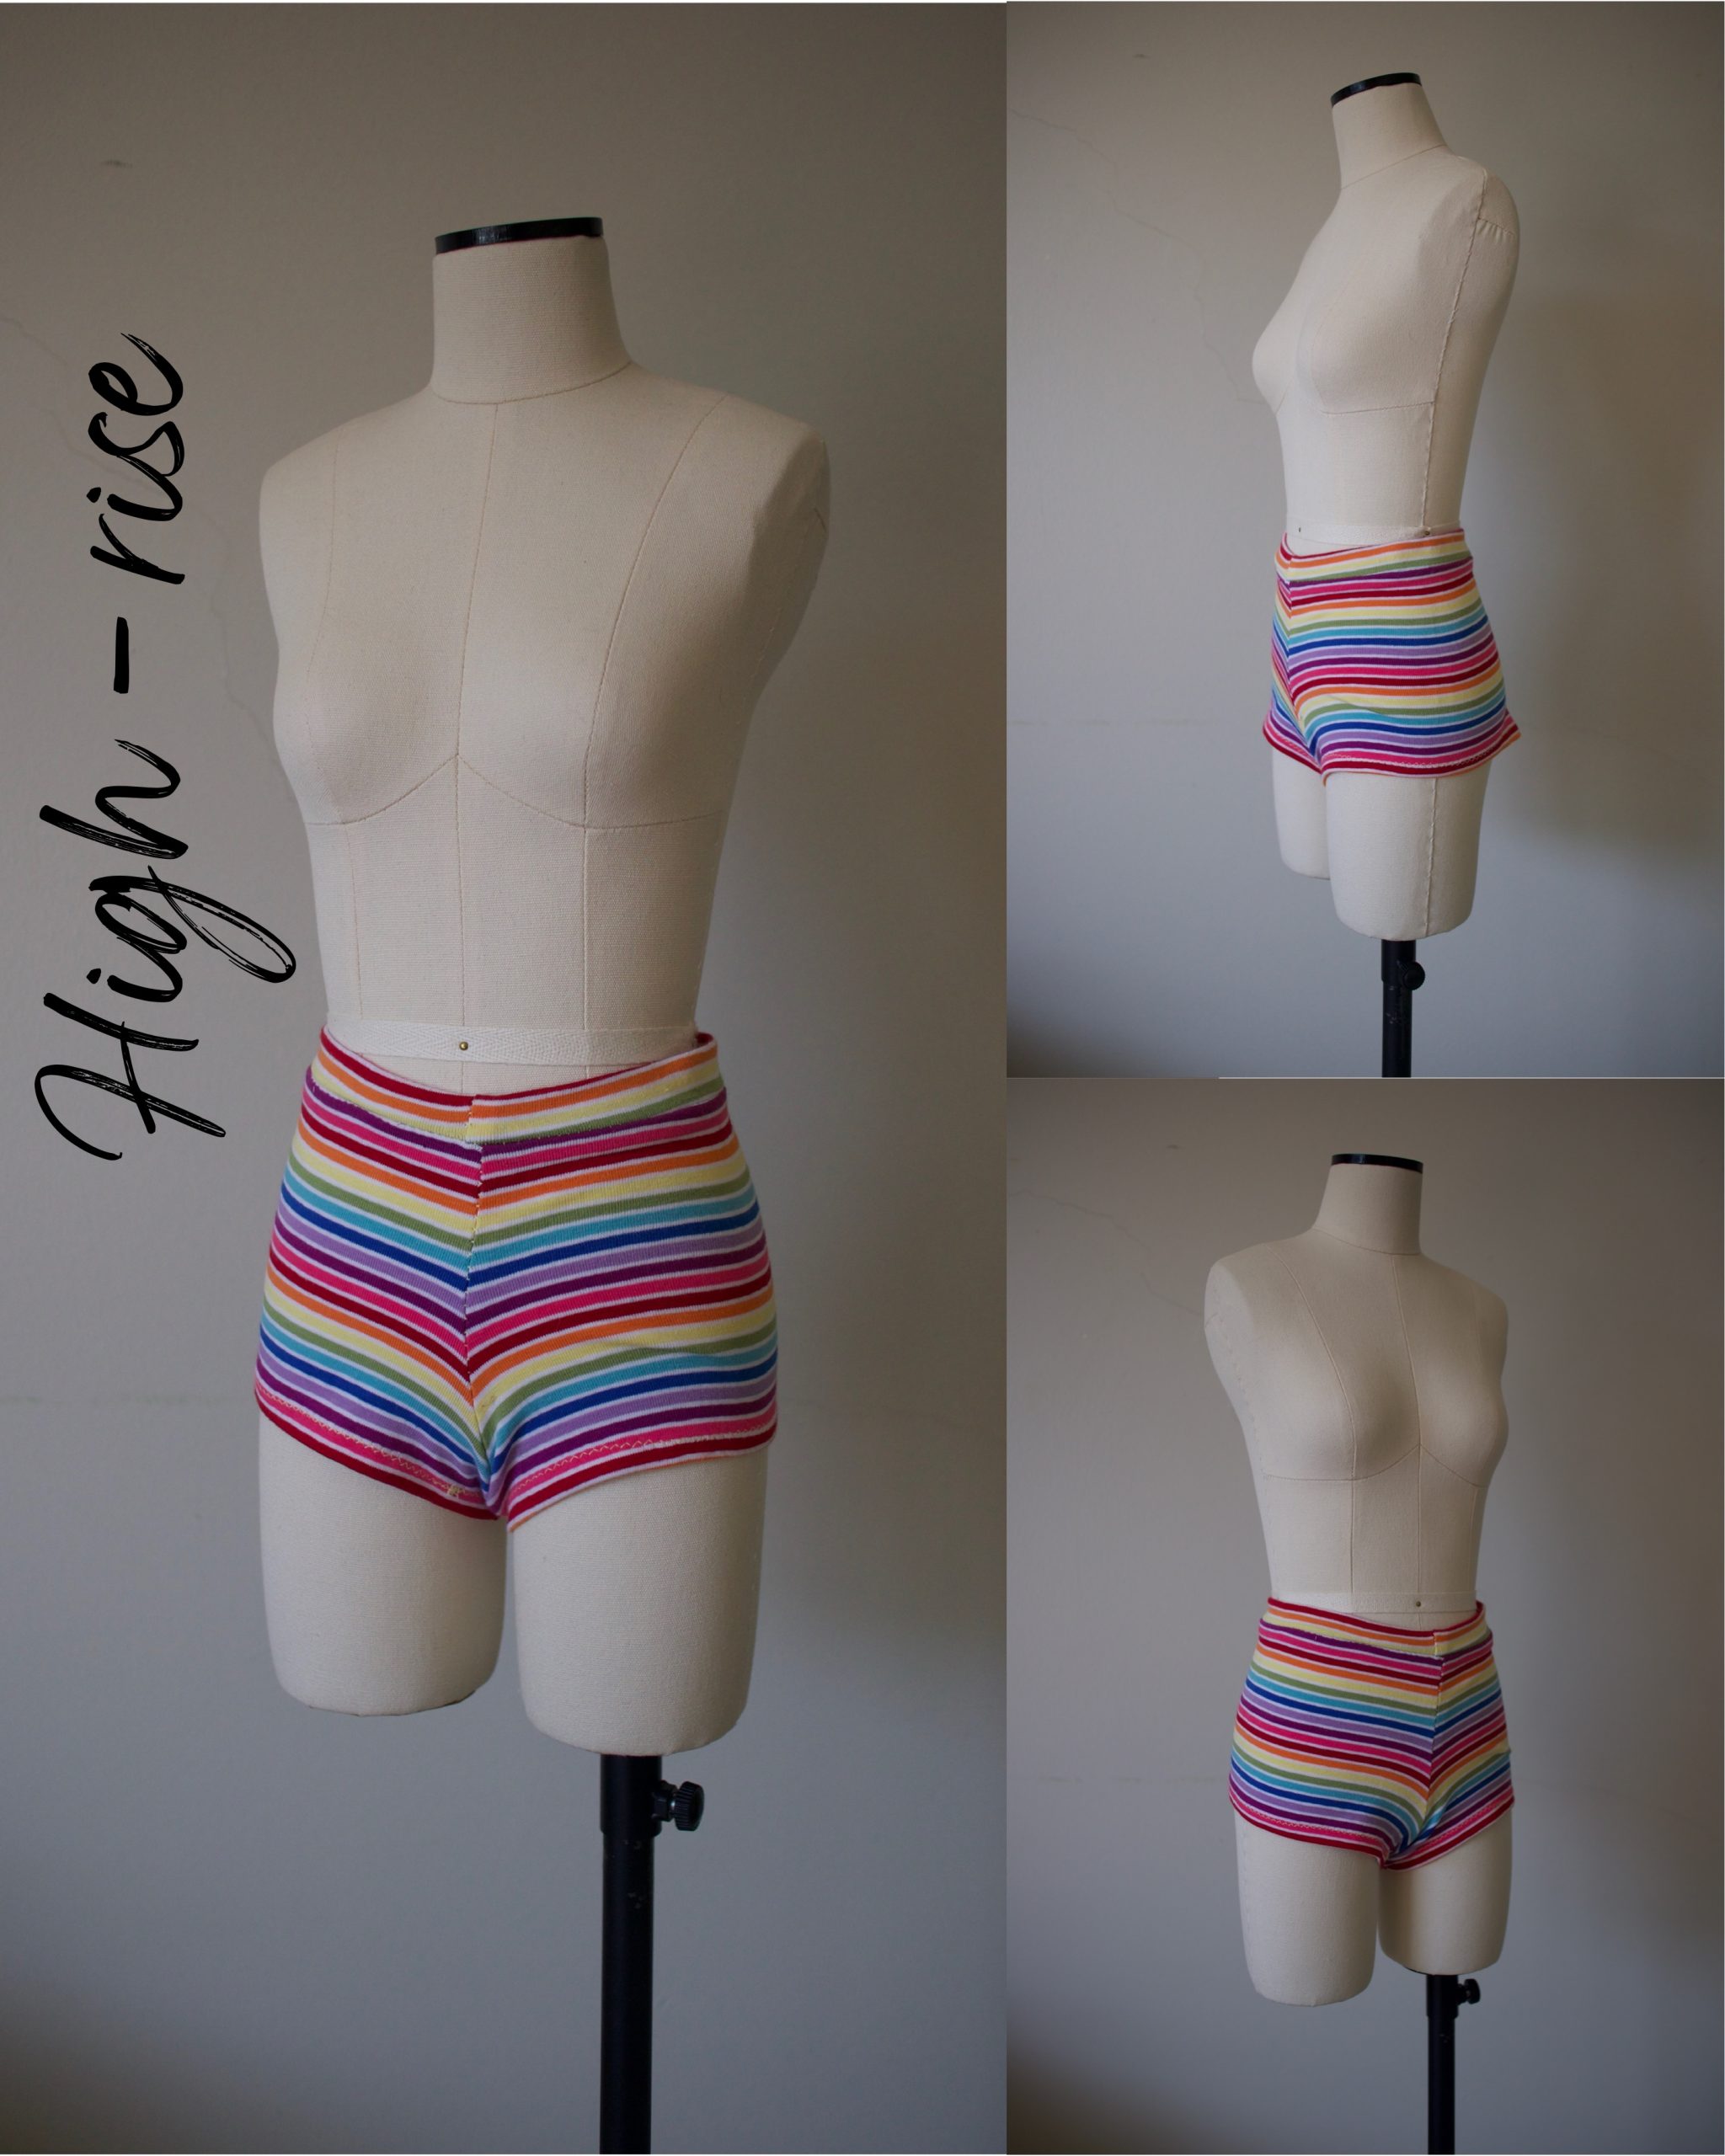 Sewing PDF Pattern High Waist Bikini Bottoms Sewing Pattern Women